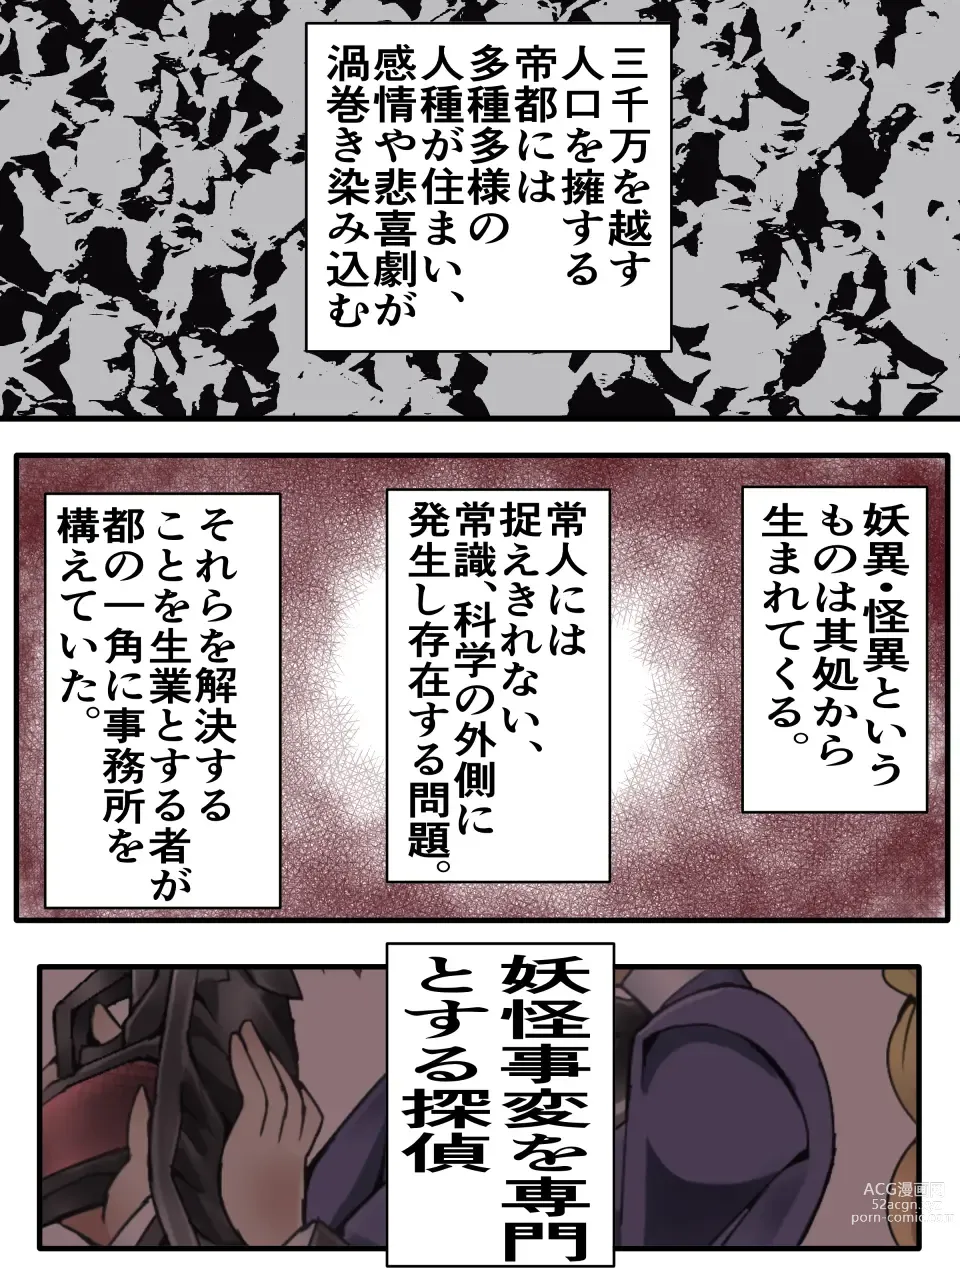 Page 1 of doujinshi Mysterious Detective Mito Kano Kagura Comes ~Detective vs Devil Worshiper~